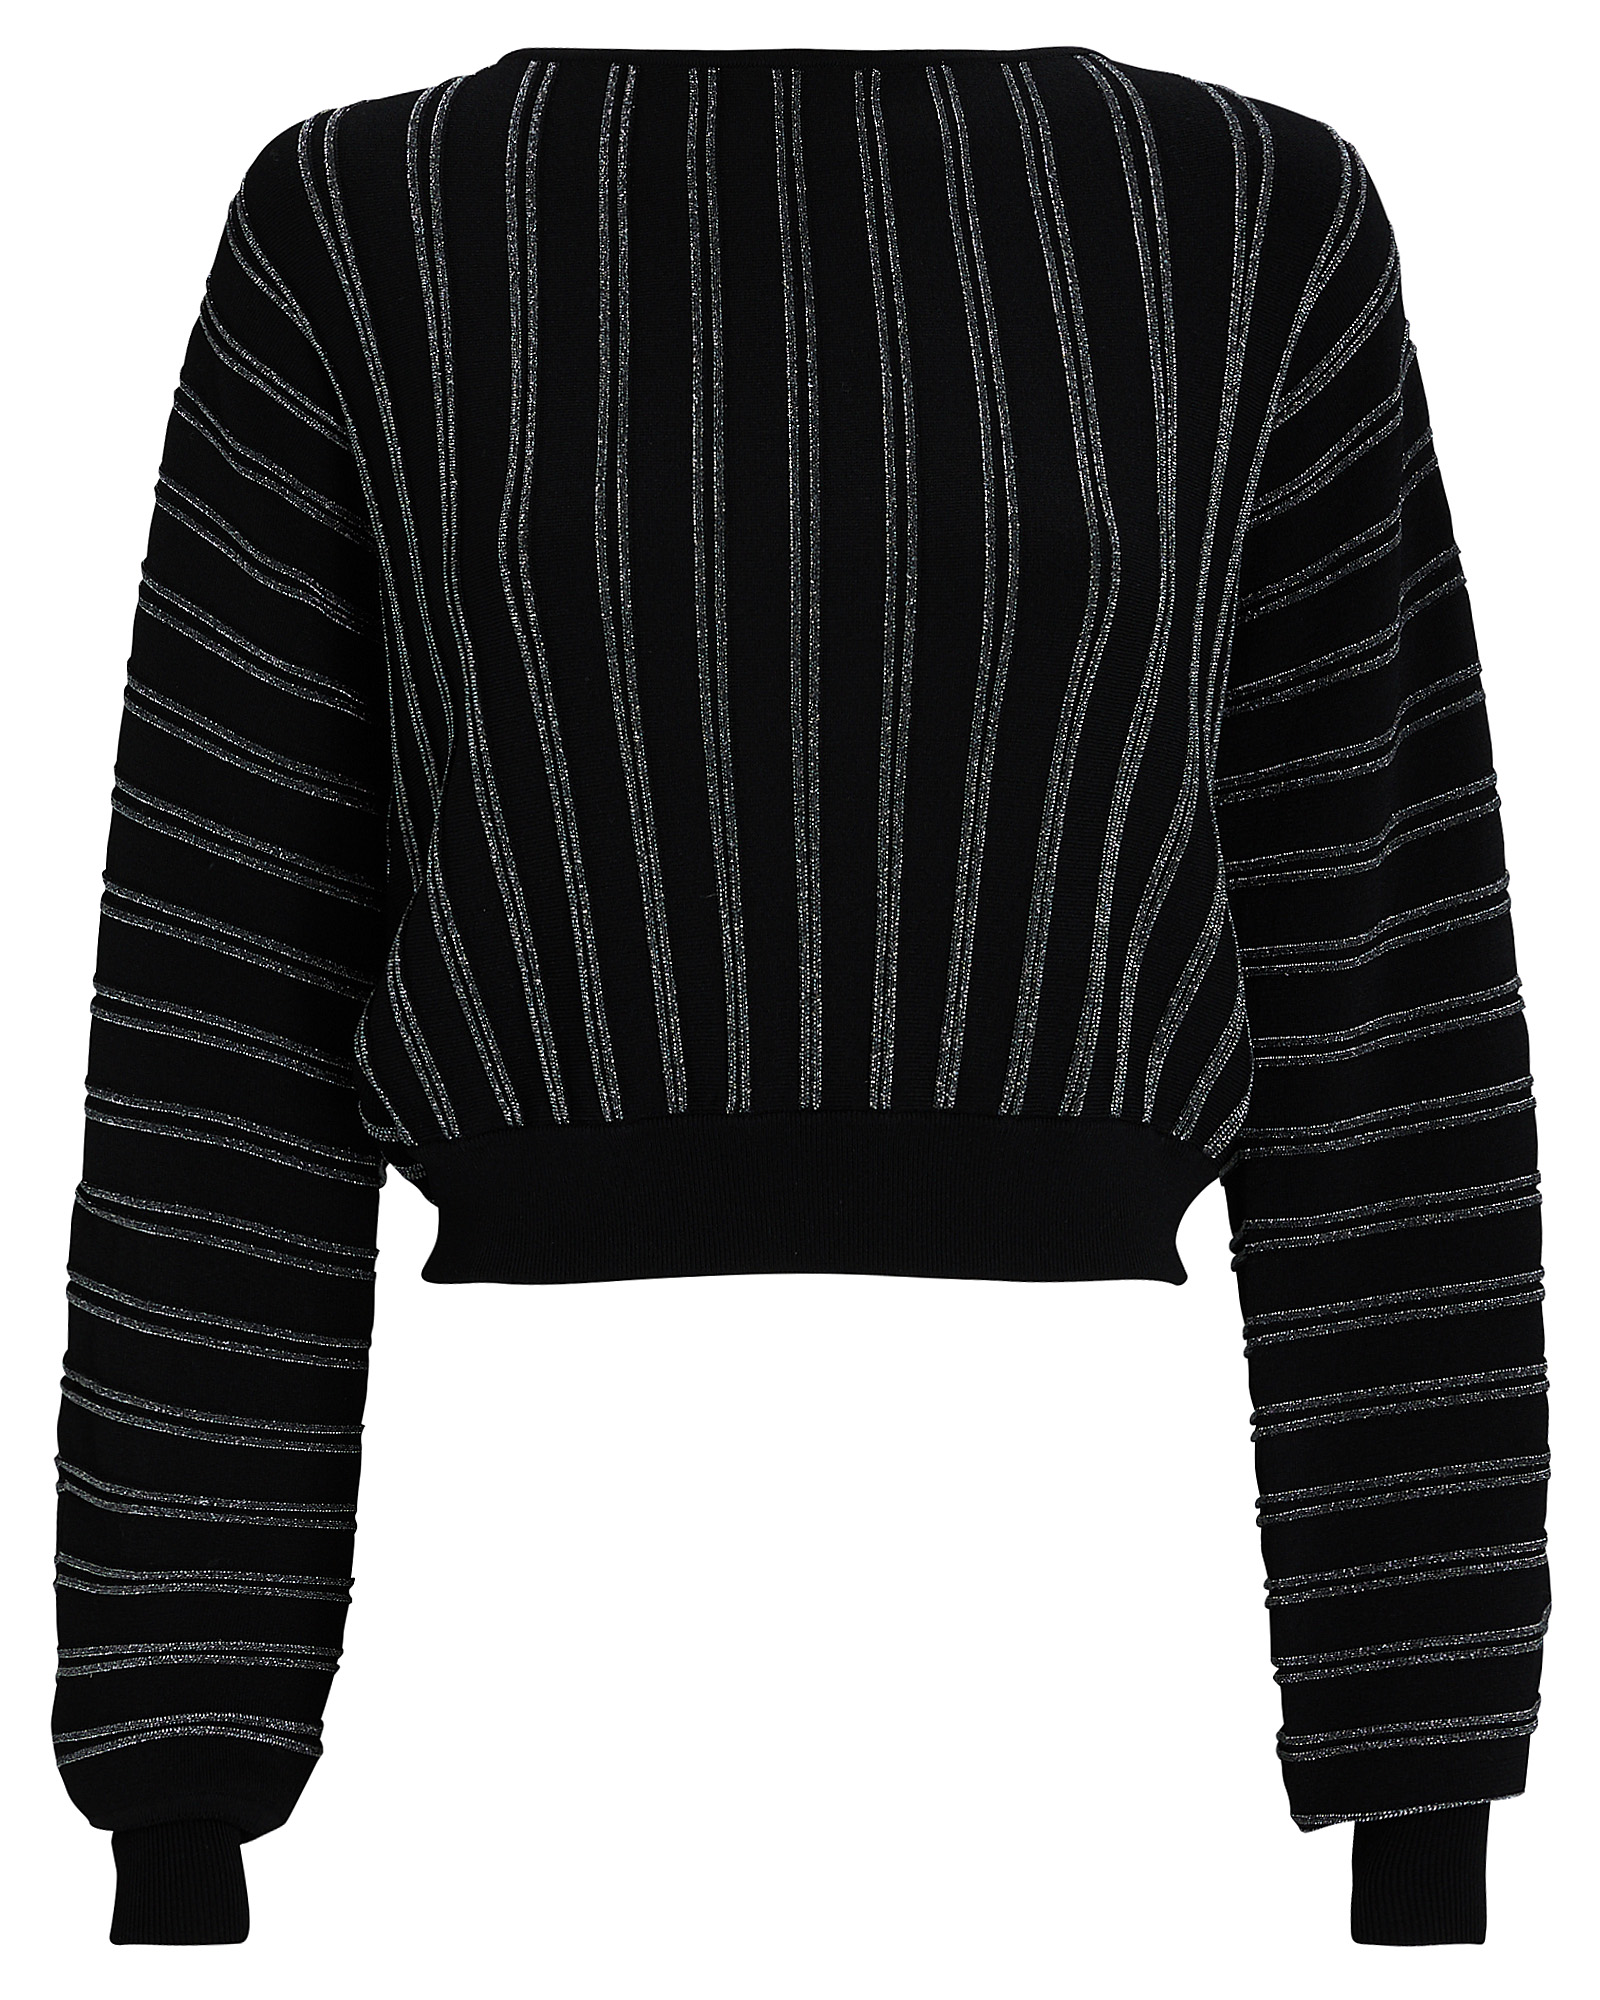 INTERMIX Private Label Striped Sweater | INTERMIX®